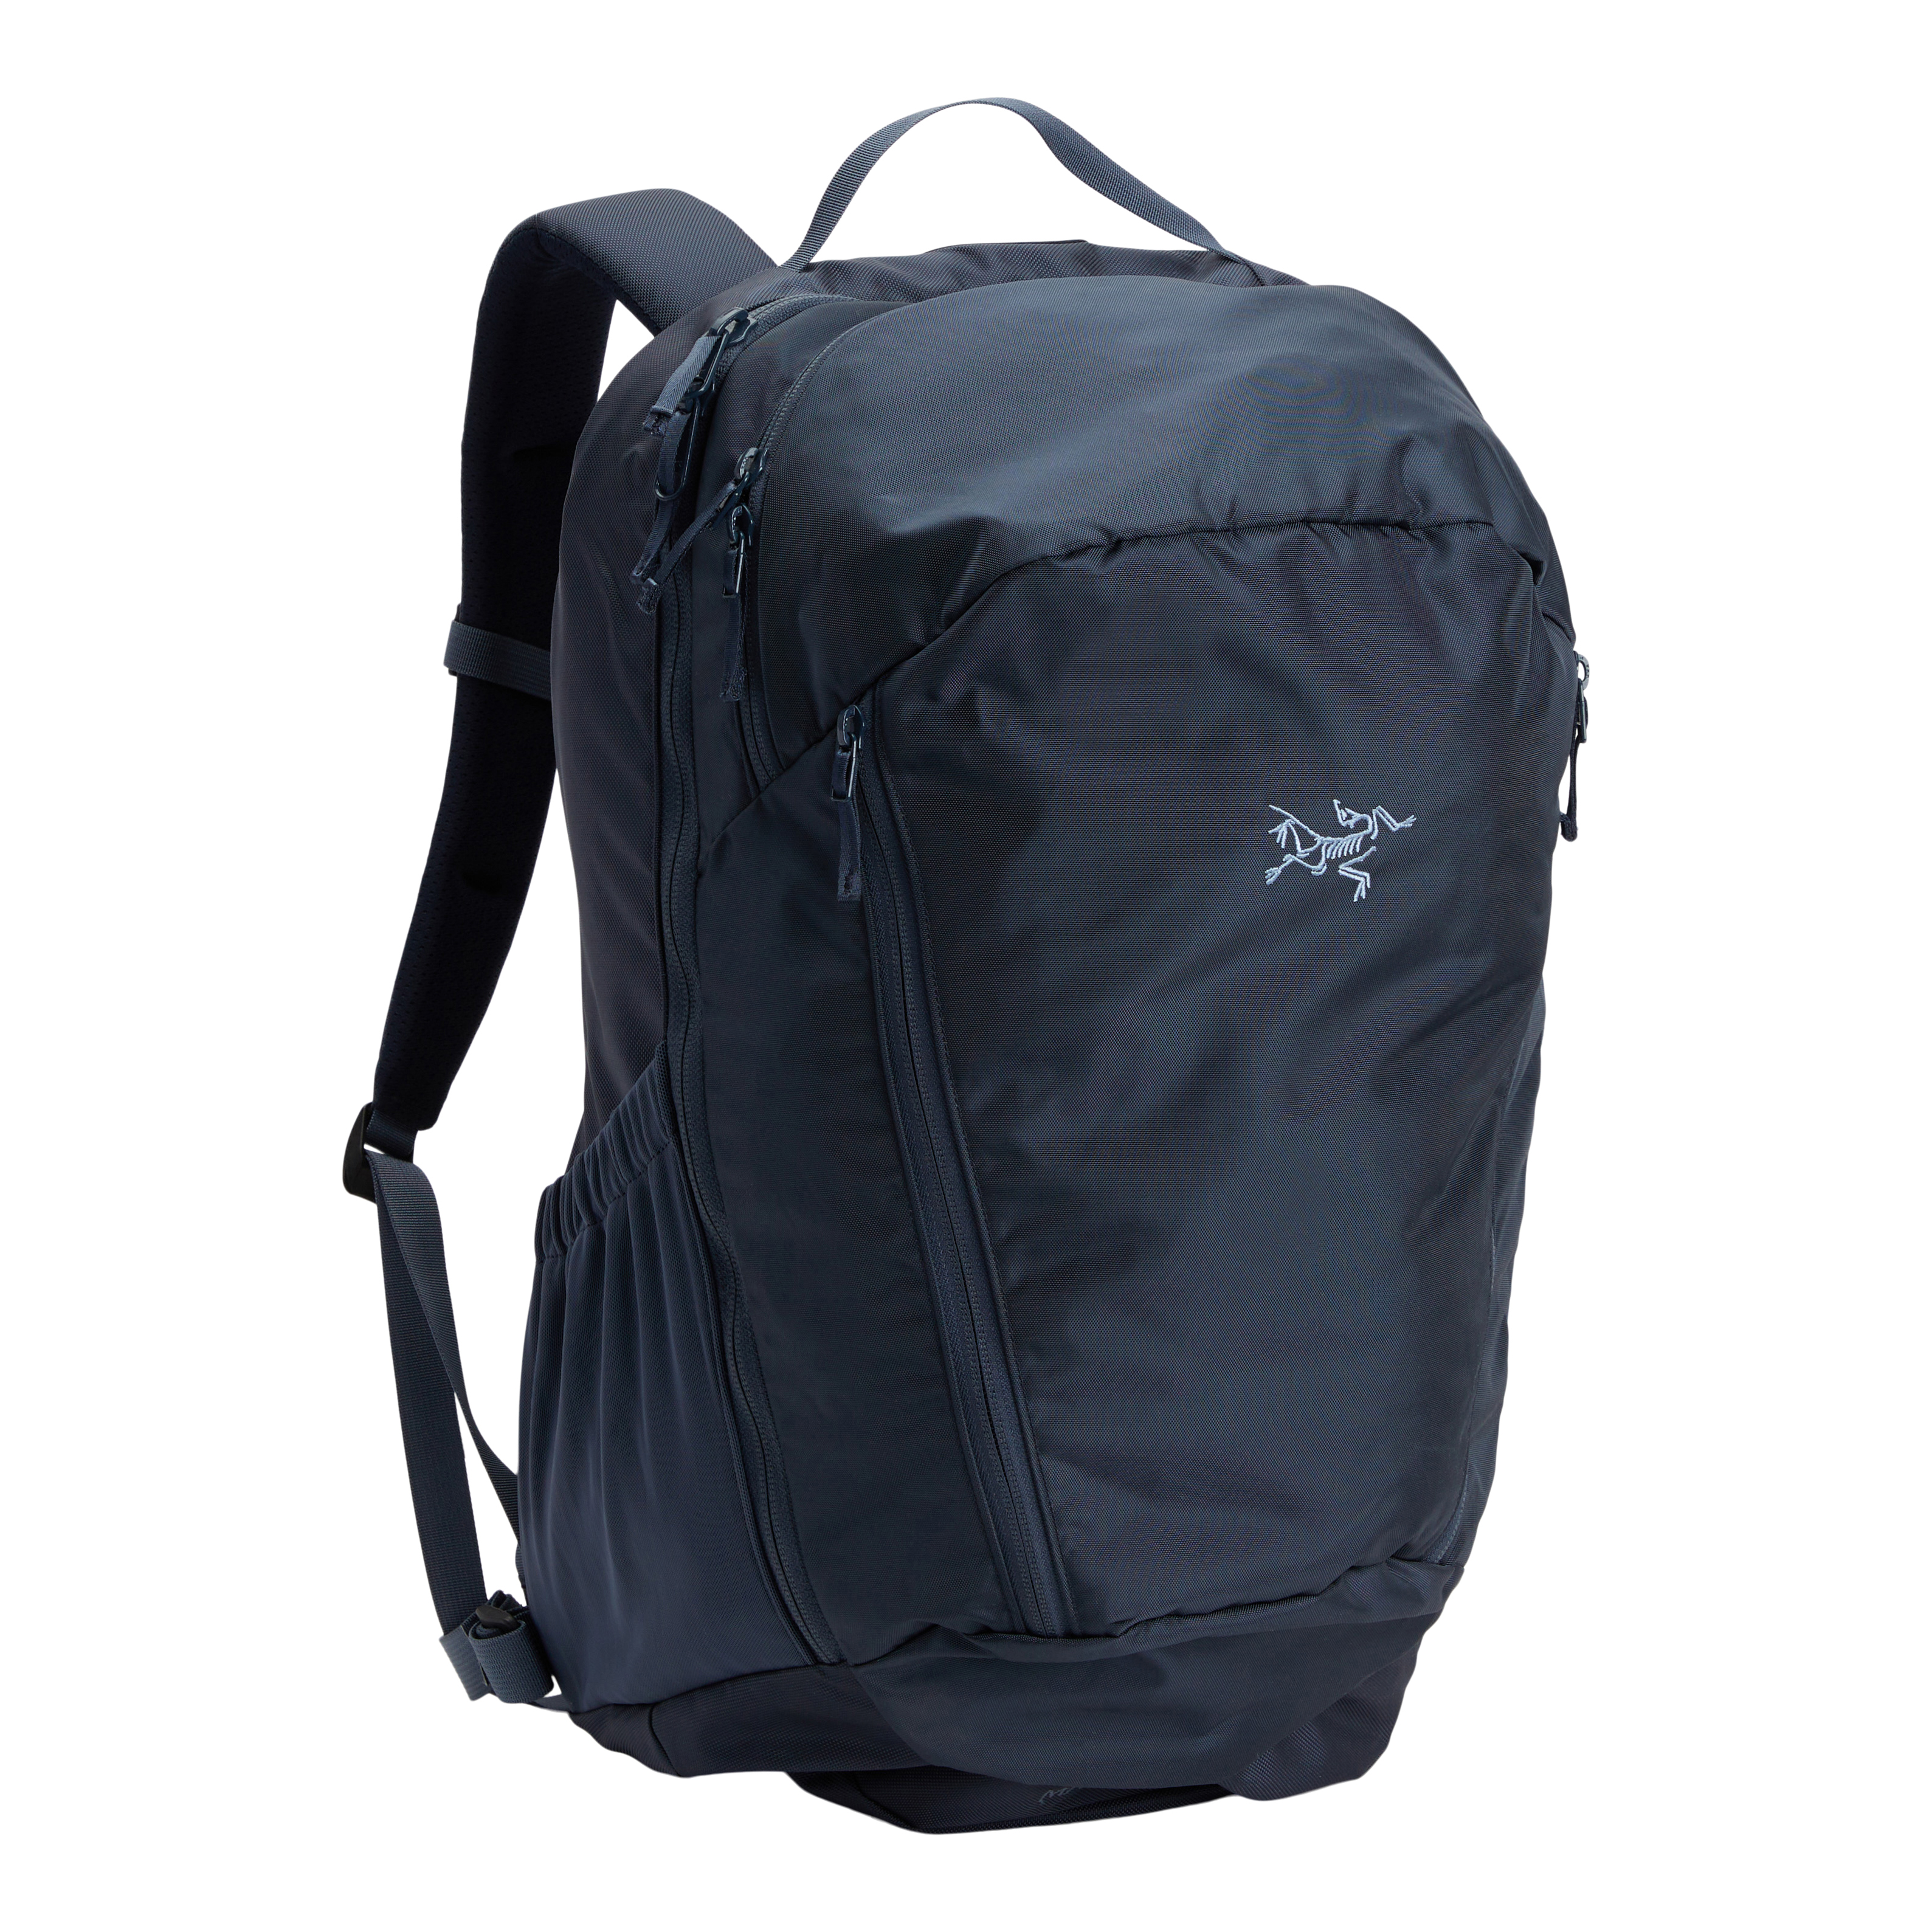 Used Mantis 32 Backpack | Arc'teryx ReGEAR